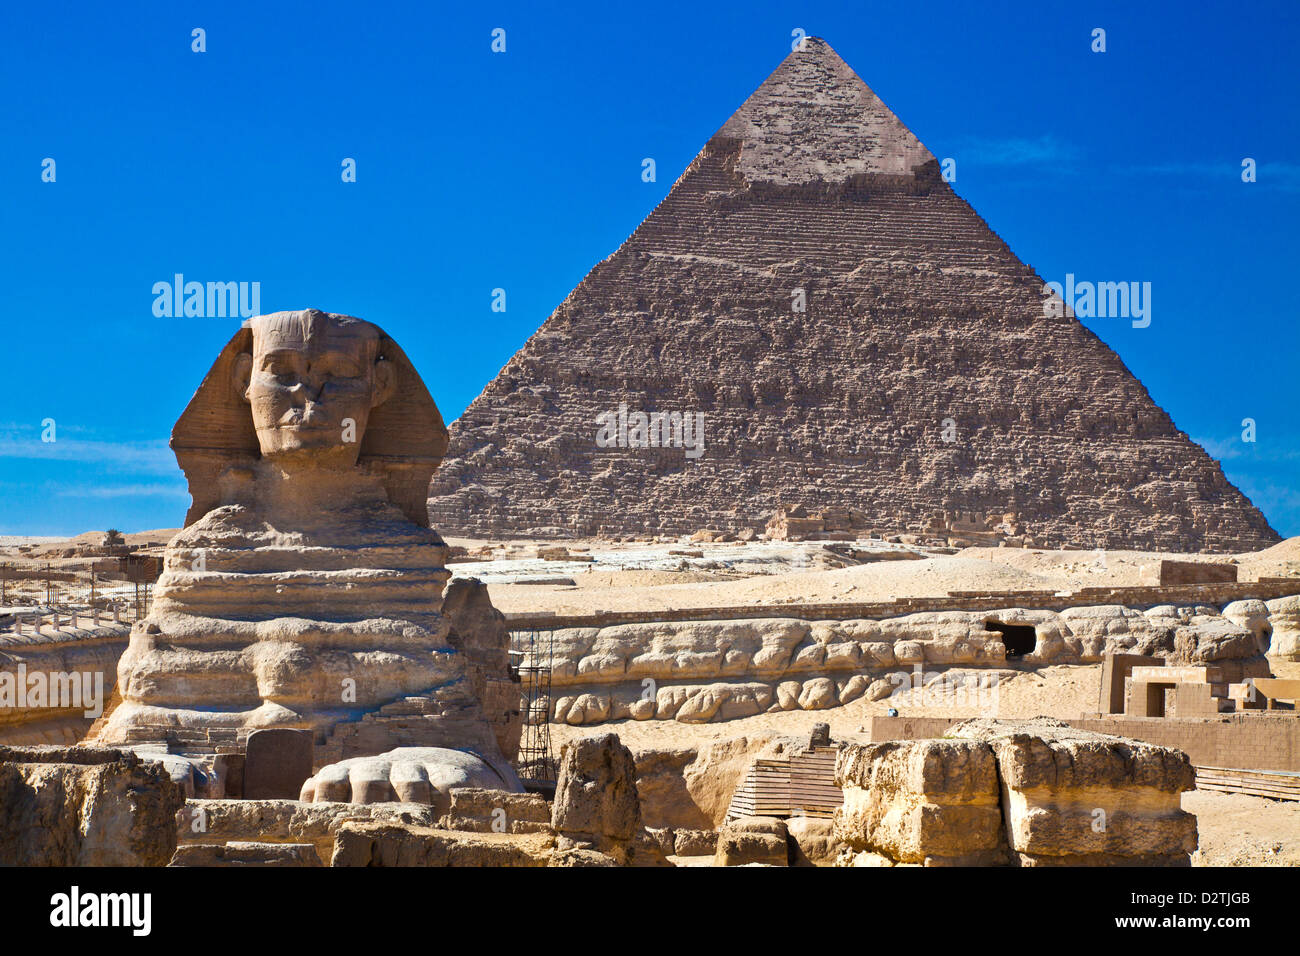 La pyramide de Khafré, également connu sous le nom de Khéphren, et le Sphinx de la nécropole sur le plateau de Gizeh, près du Caire, Egypte Banque D'Images